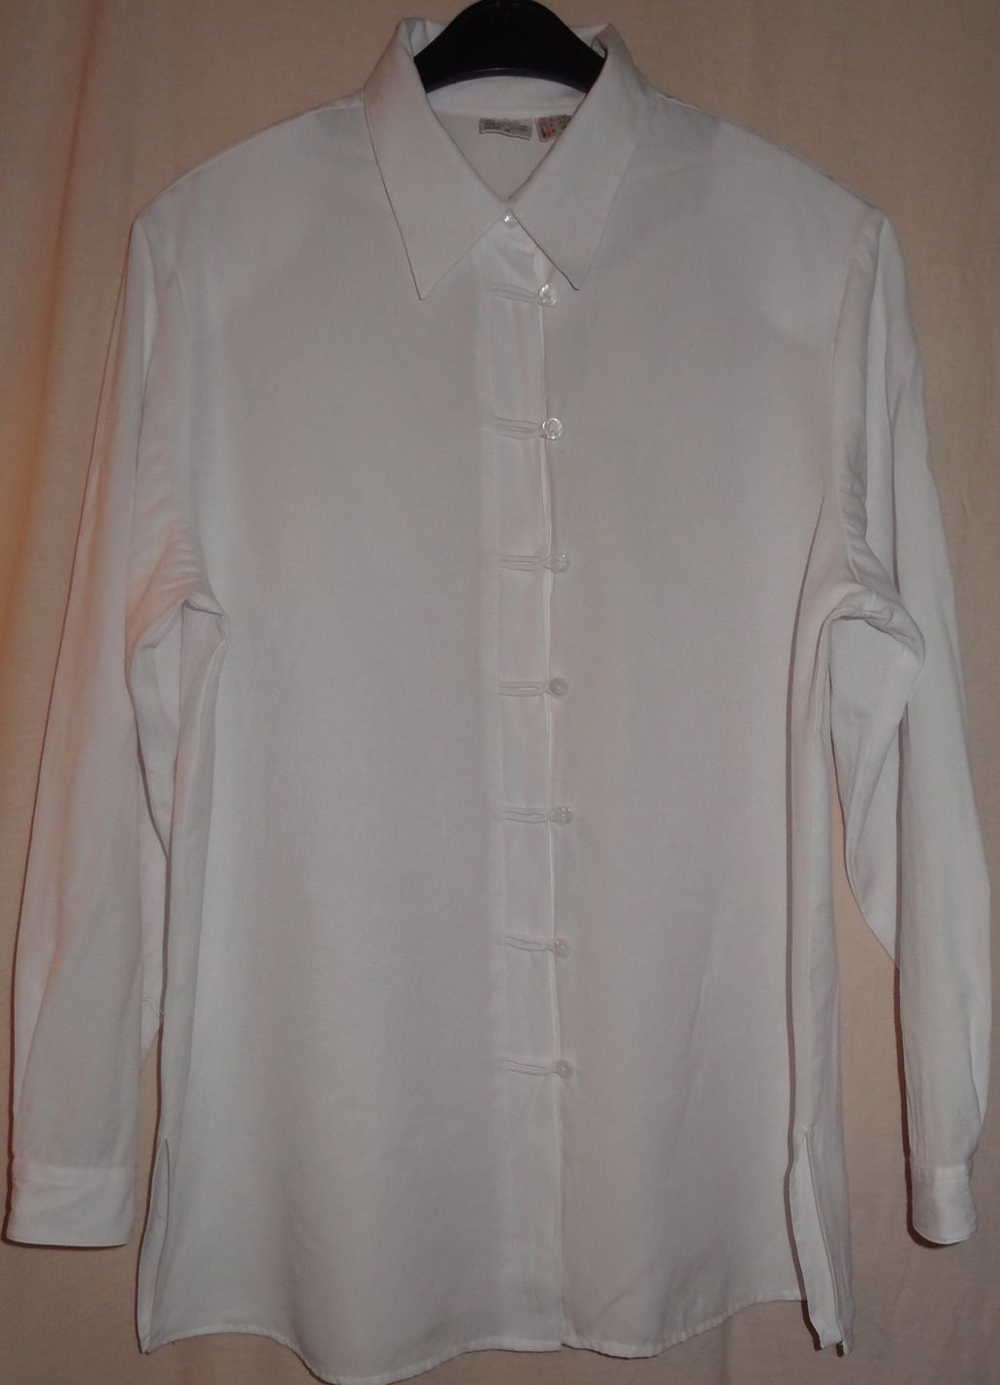 KL Bluse Gr 44 46 weiß 60 Viskose 40 Polyester Langarm wenig getragen einwandfrei Damen kleidung